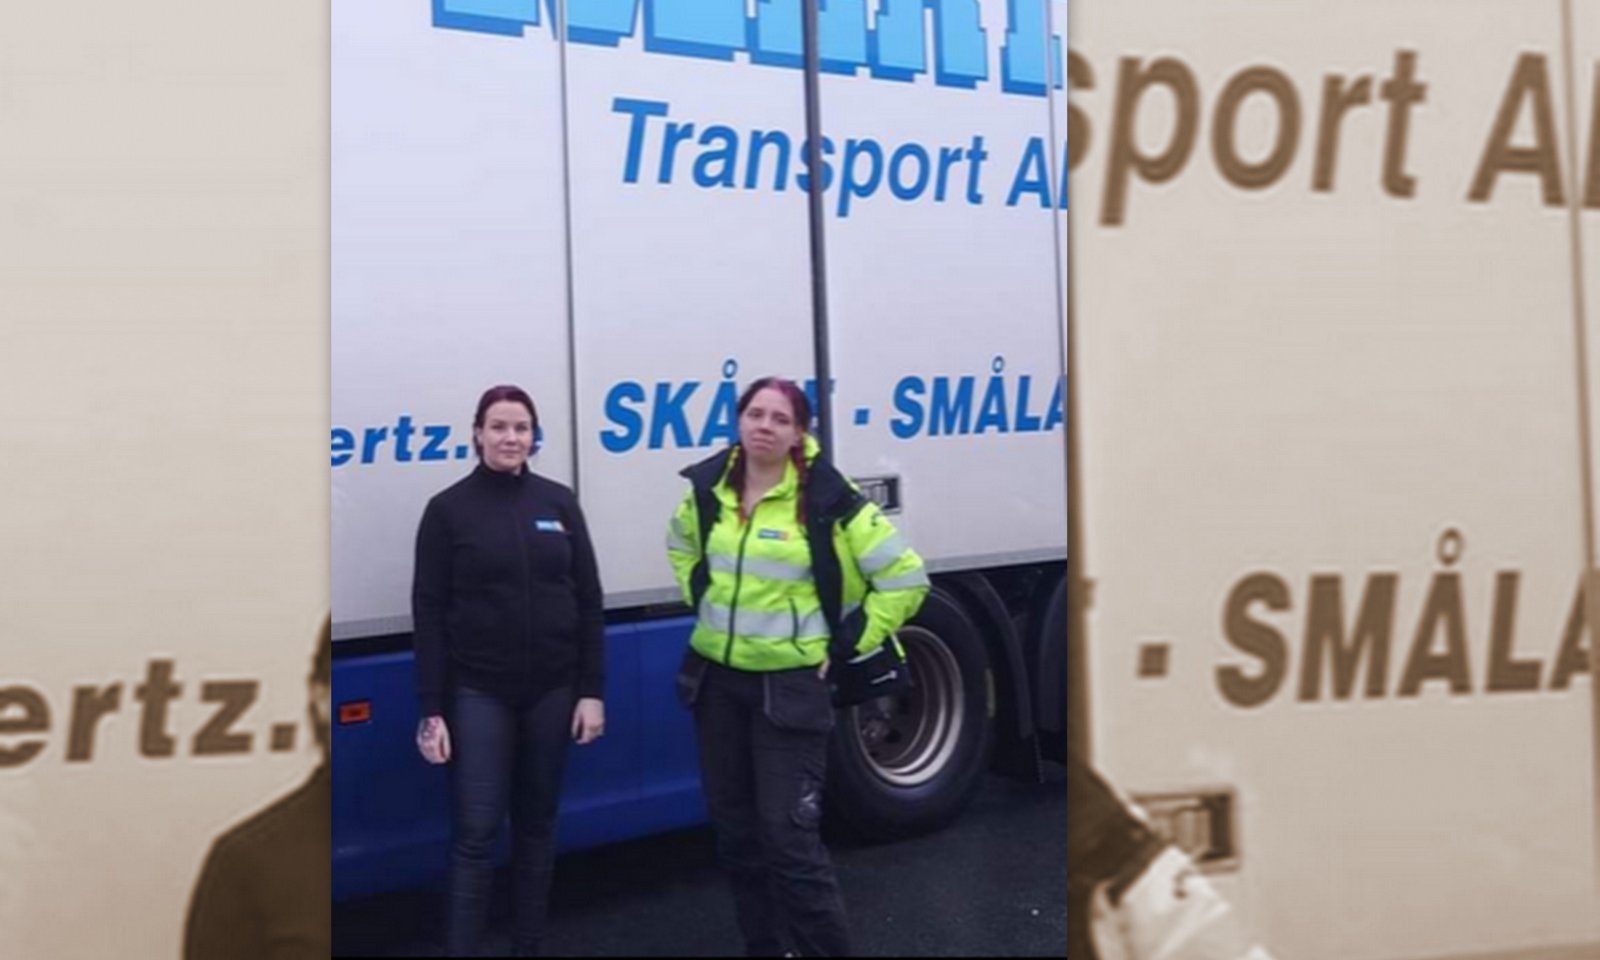  Till vänster står Sanna som är arbetsledare Jönköping och till höger står Evelina, en av chaufförerna i Jönköping. Foto: Nickes Åkeritjänst.